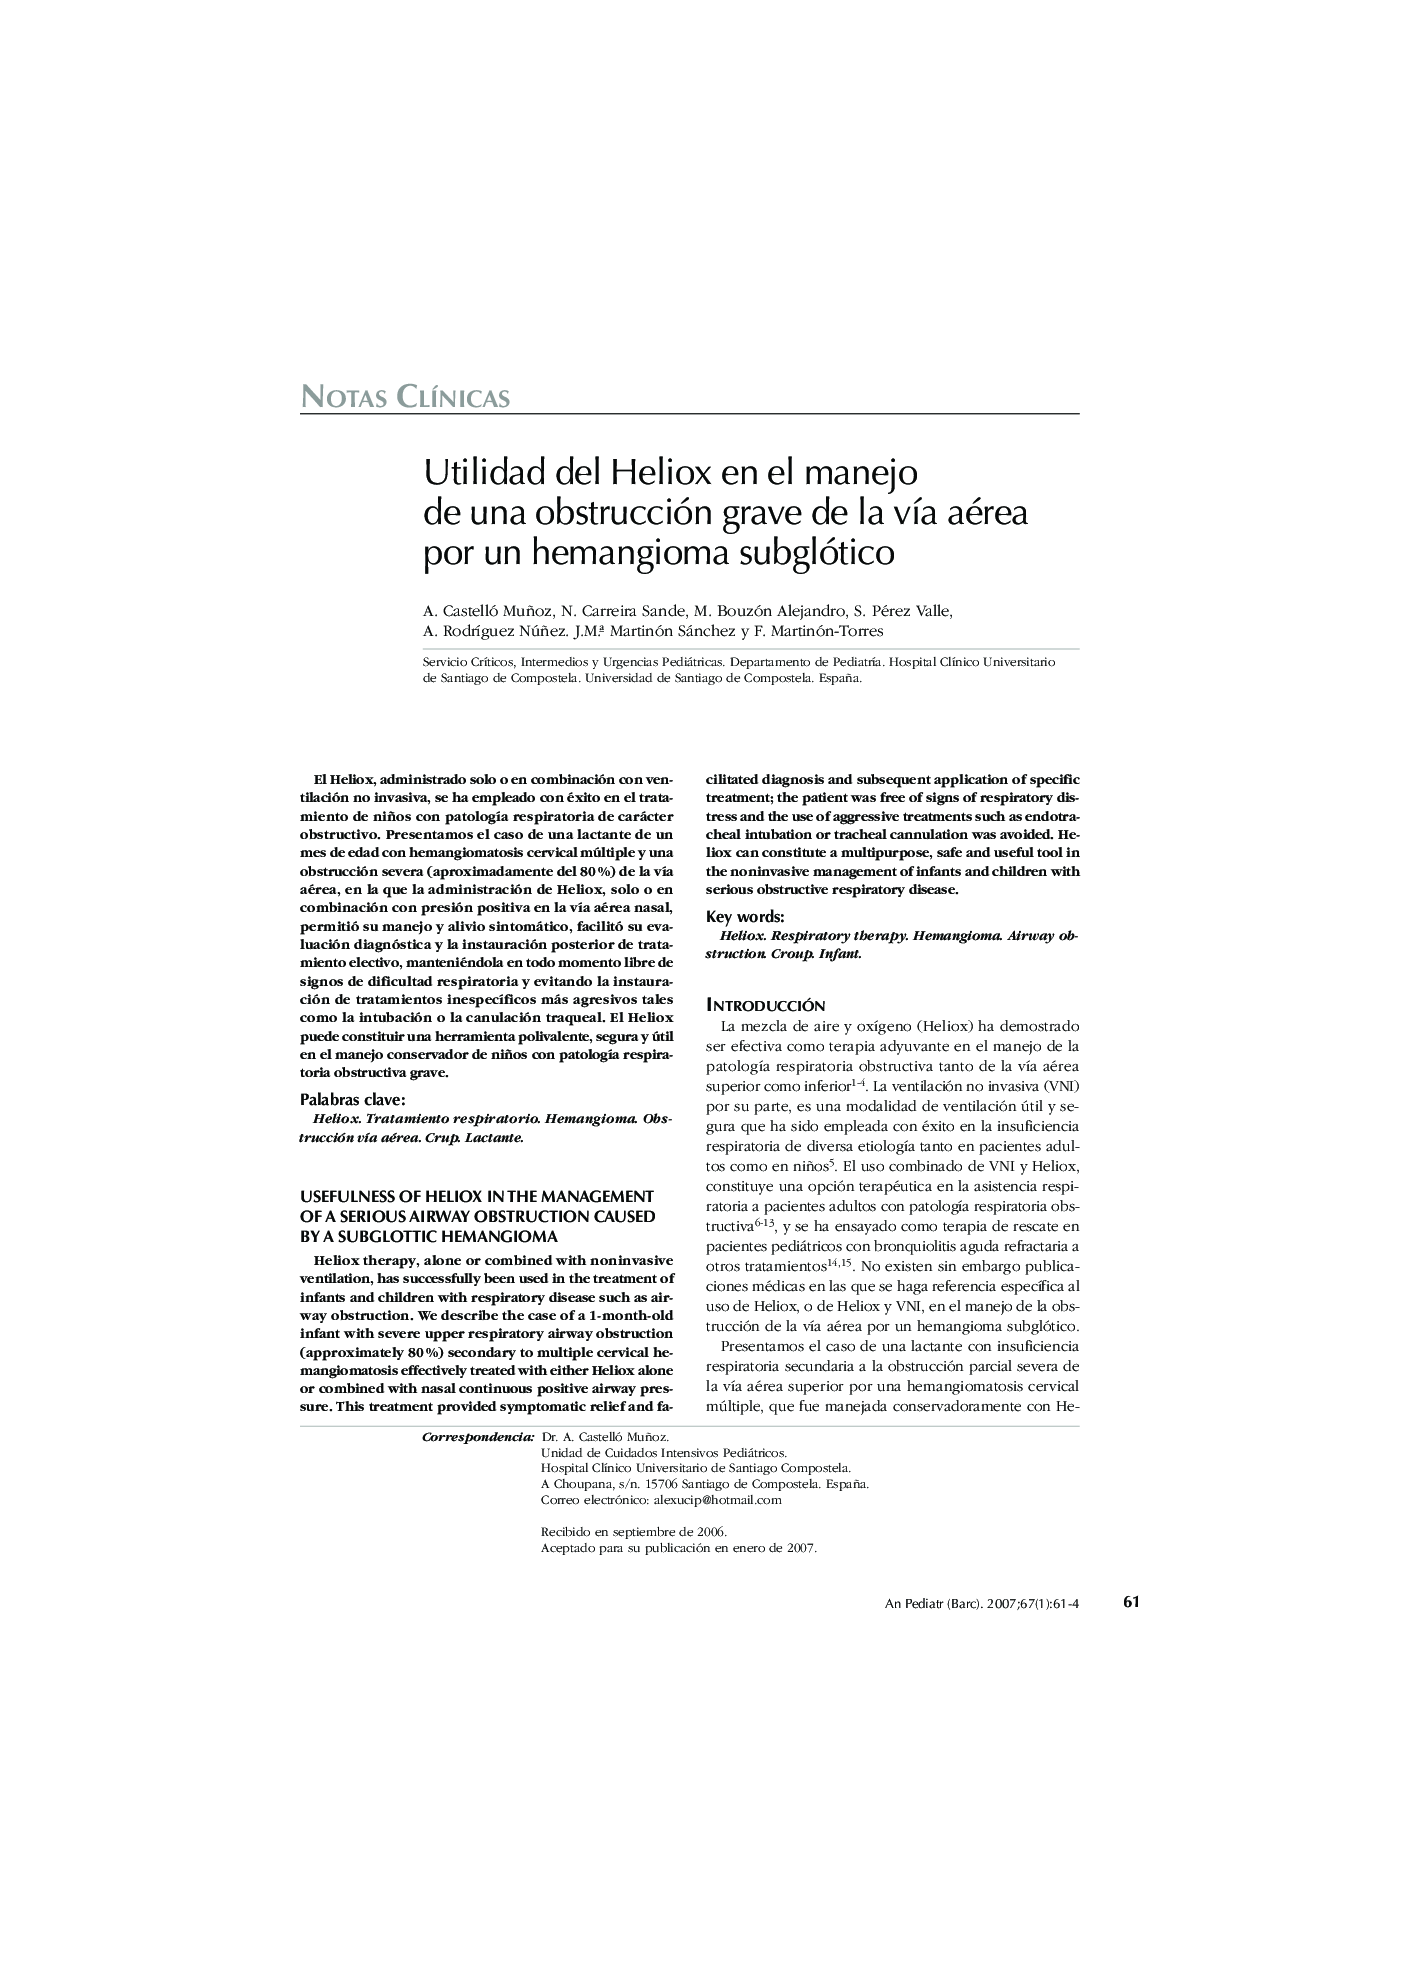 Utilidad del Heliox en el manejo de una obstrucción grave de la vÃ­a aérea por un hemangioma subglótico